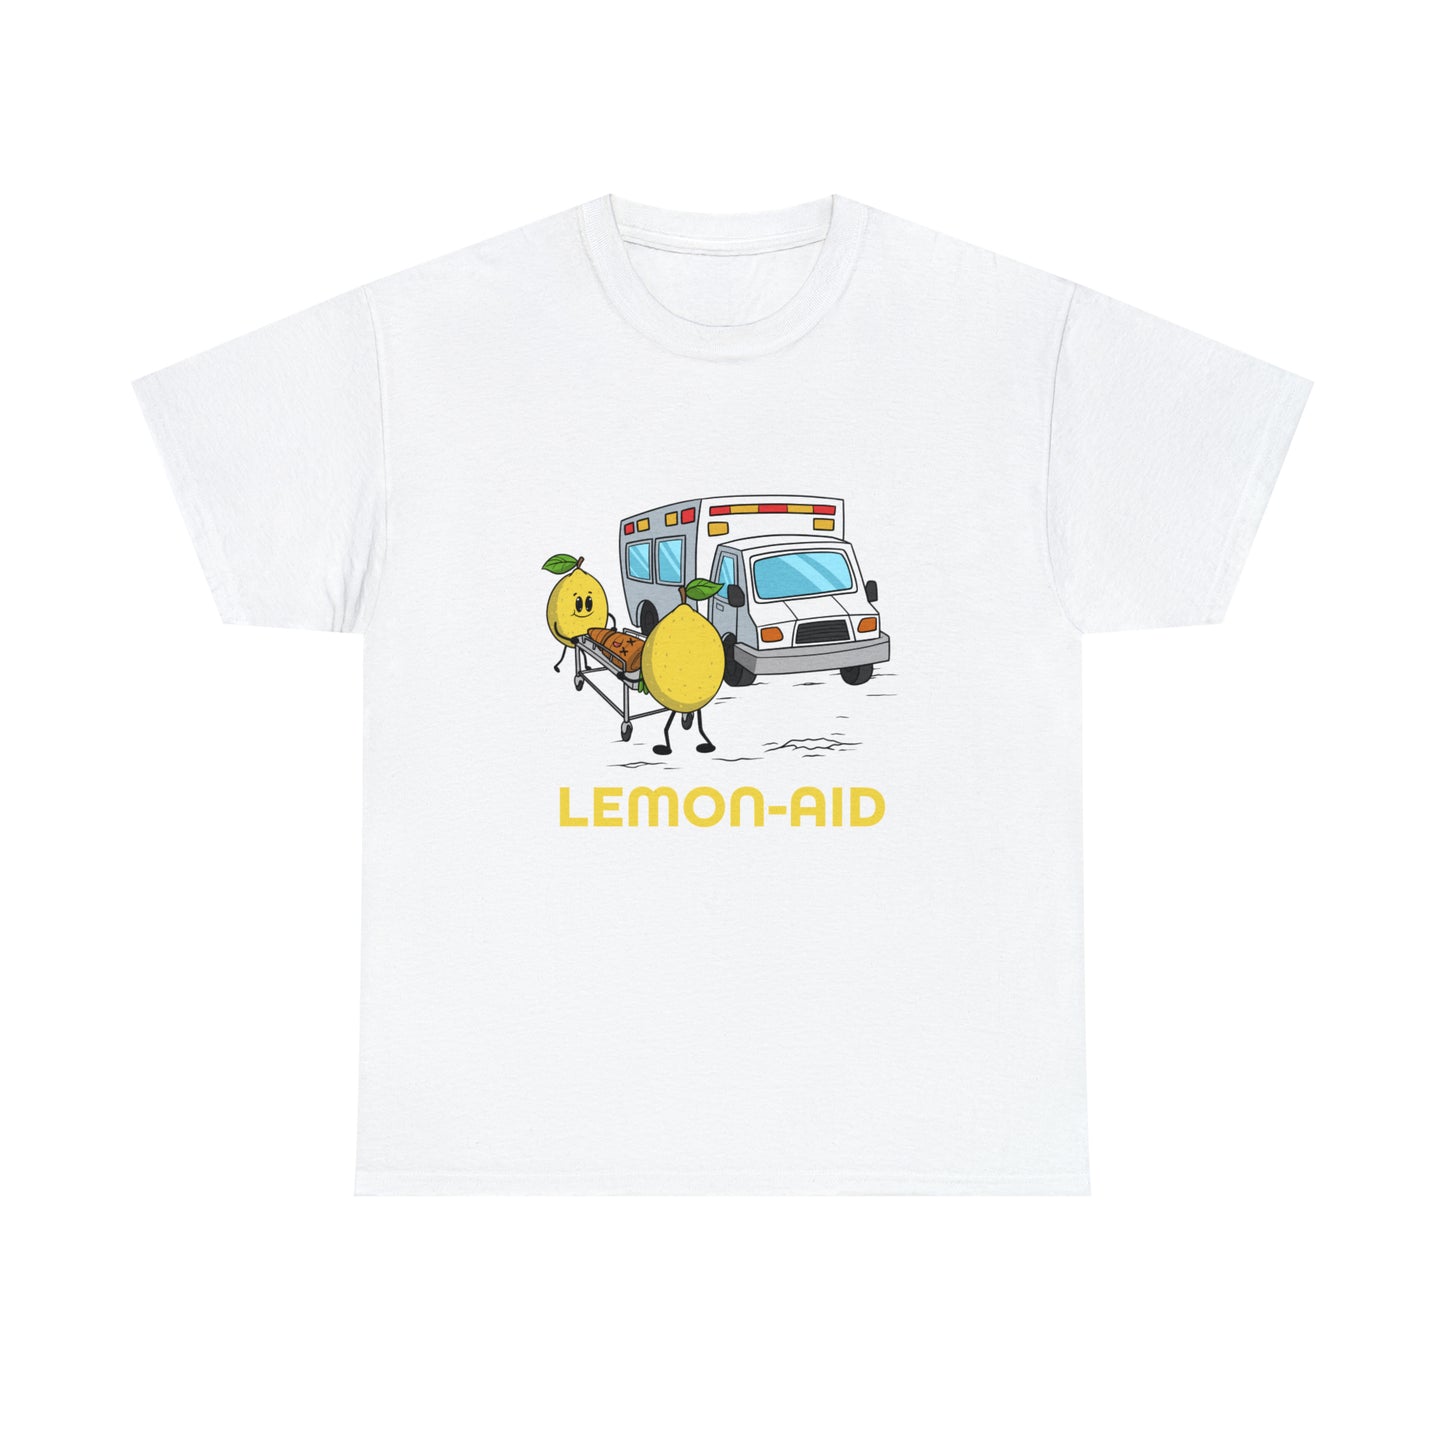 Custom Parody T-shirt, Lemon-aid design